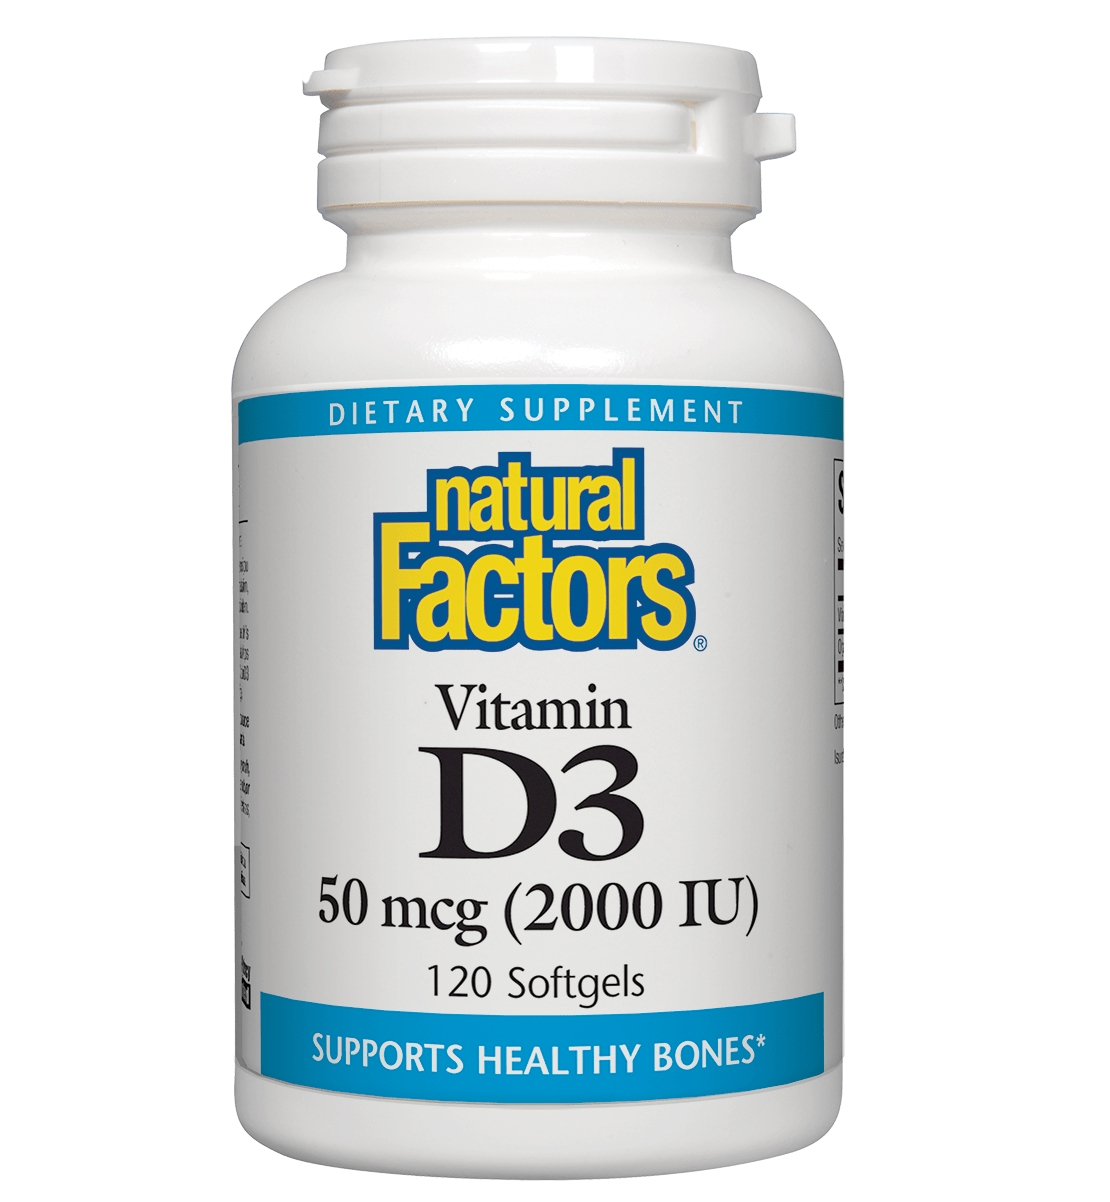 Natural Factors Vitamin D3 50 mcg (2000 IU)